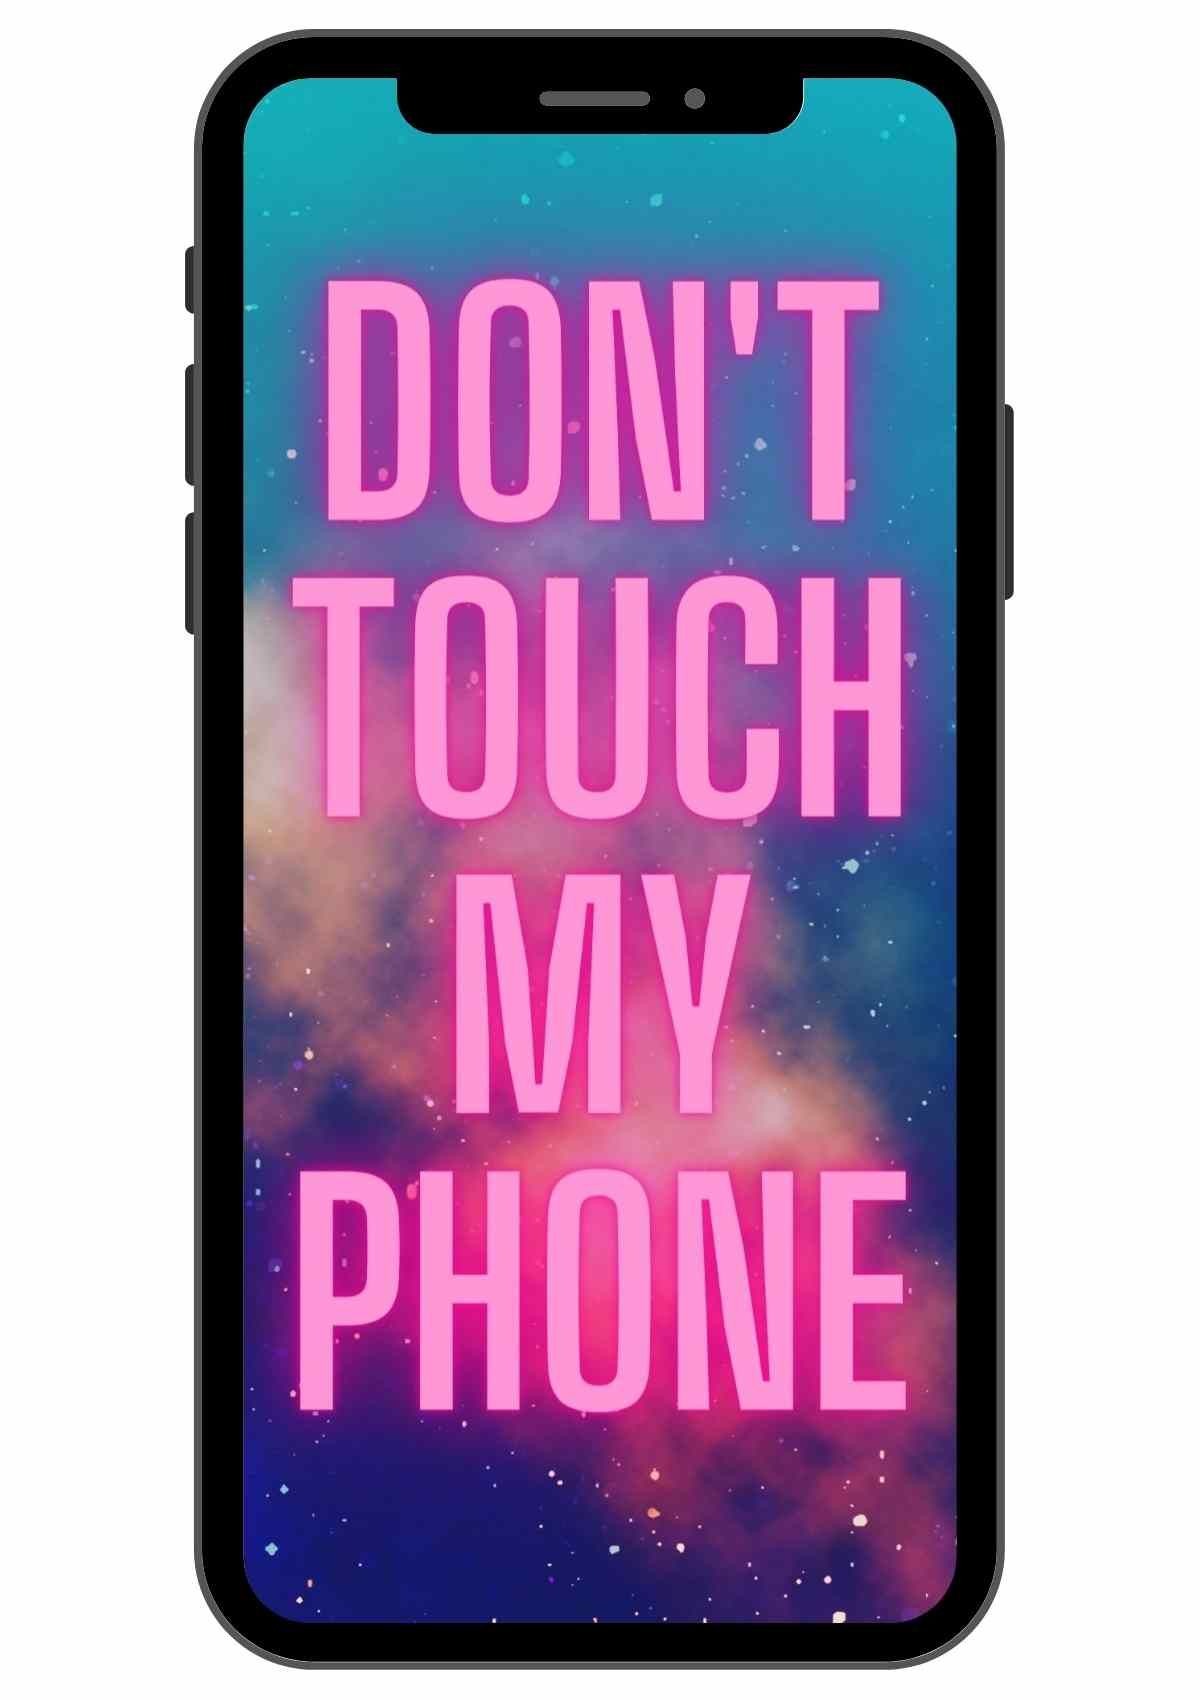 Don't touch my phone - Don't touch my phone